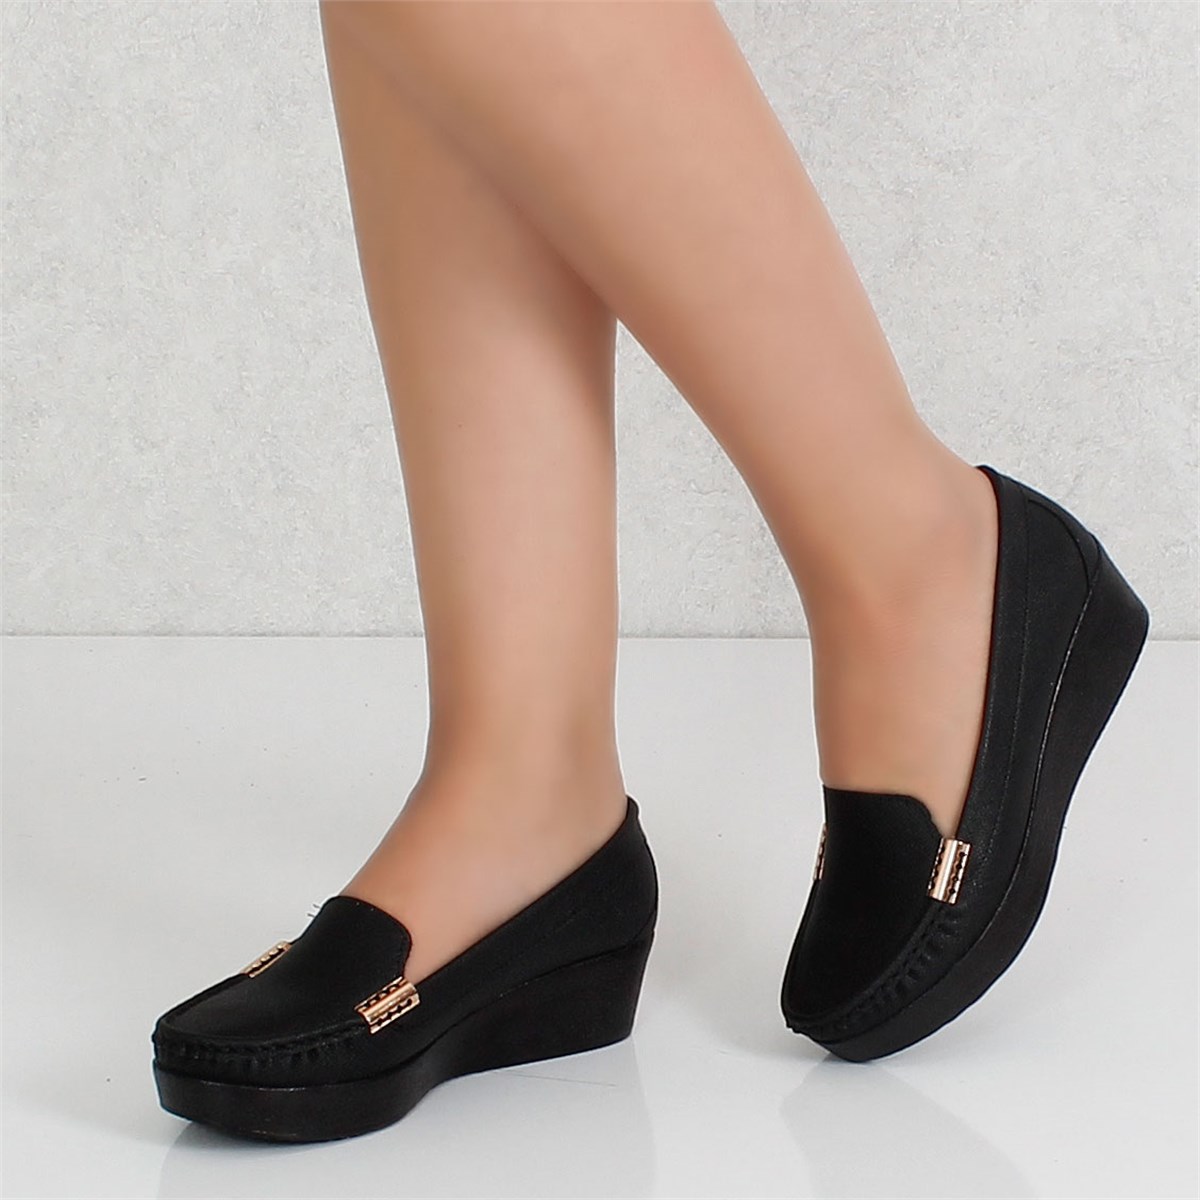 Siyah prad Dolgu Topuklu Kadın Ayakkabı 109KY Fiyatı ve Modelleri